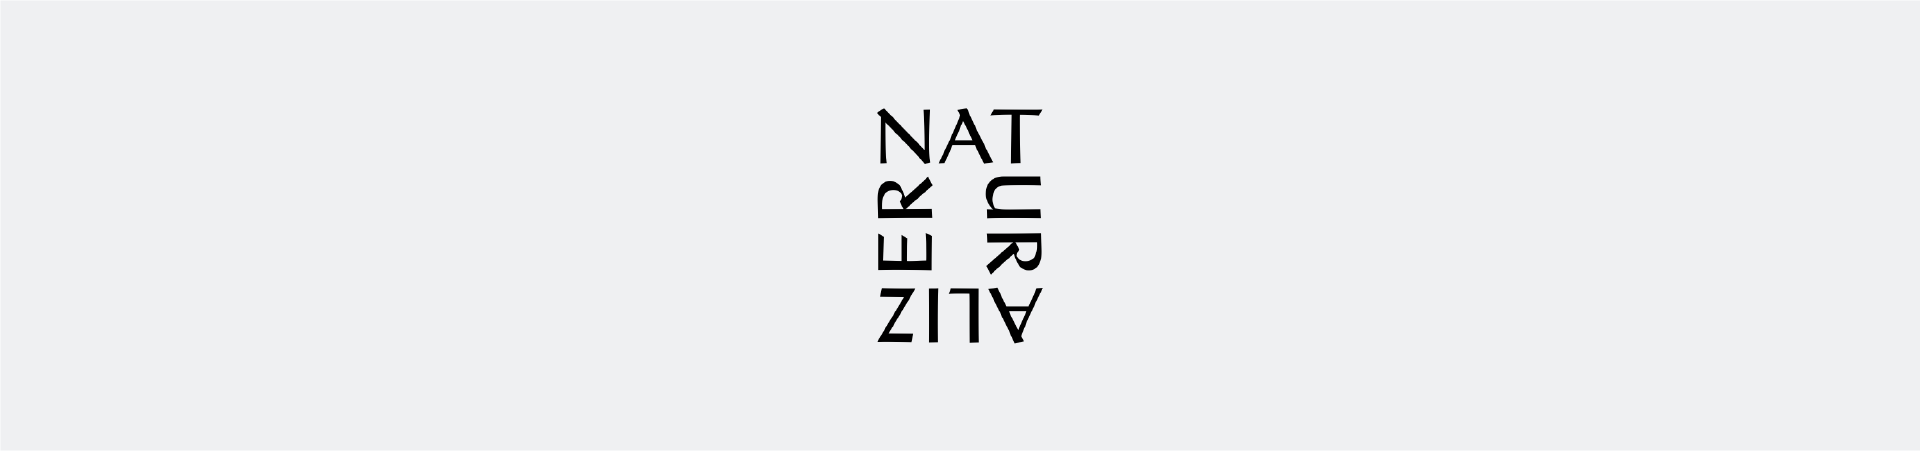 naturalizer website